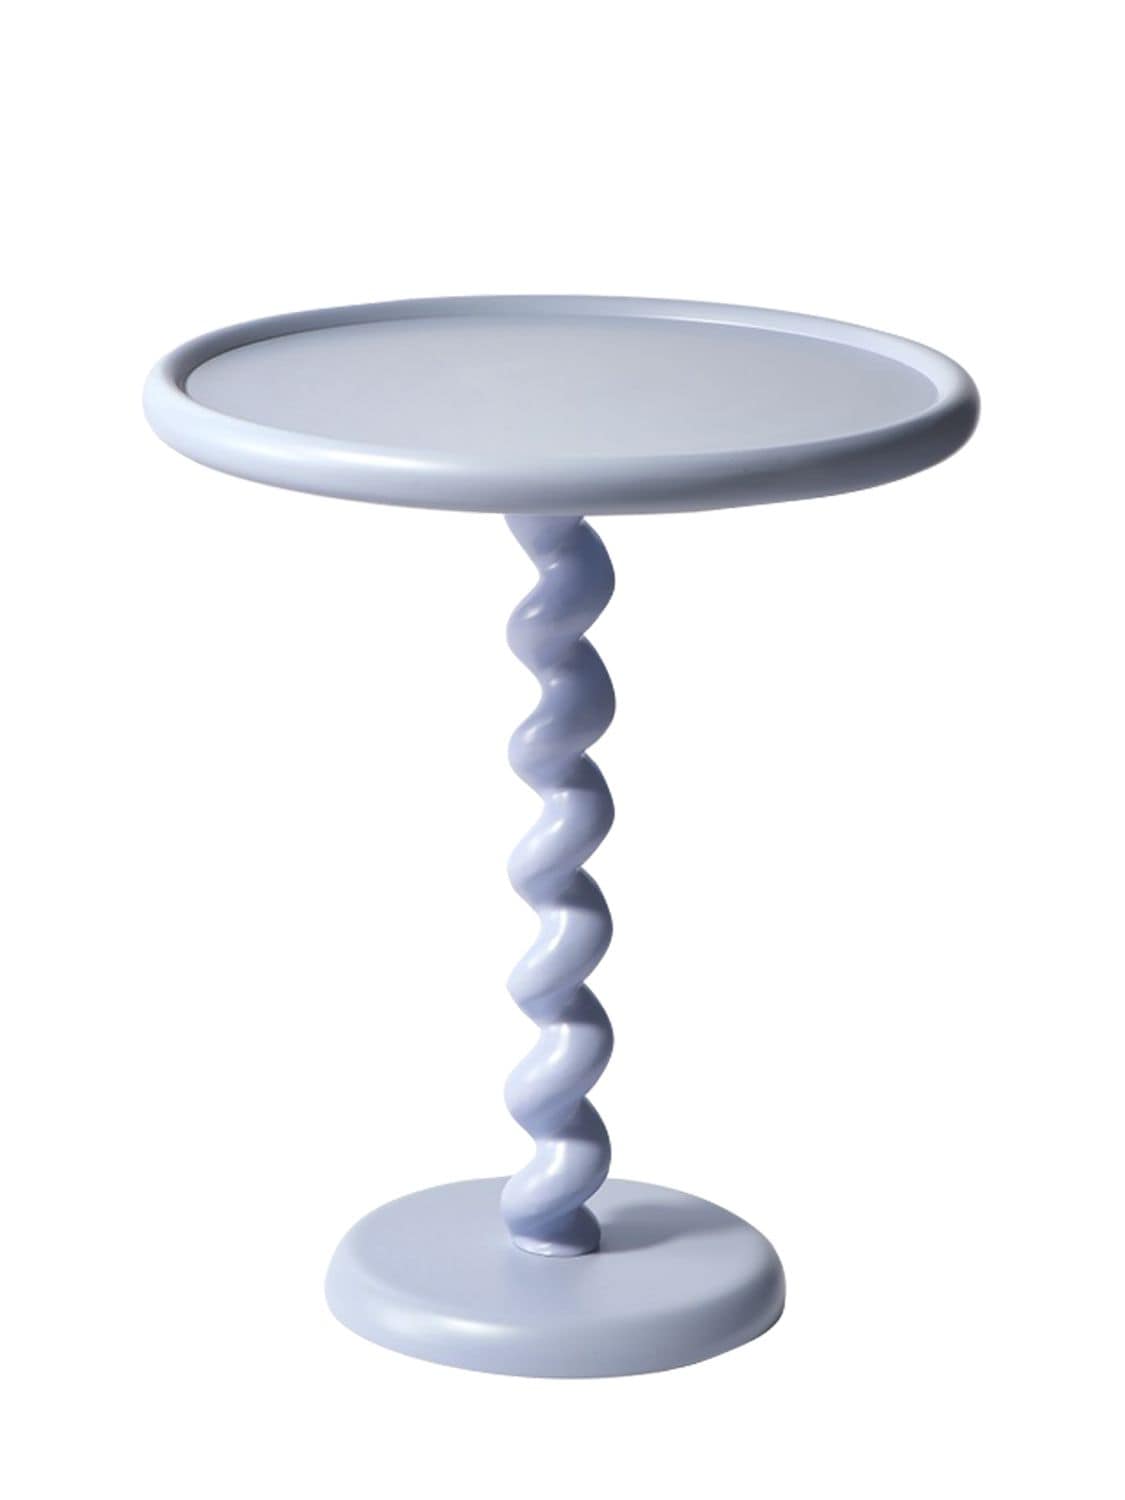 Polspotten Twister Side Table In Light Blue